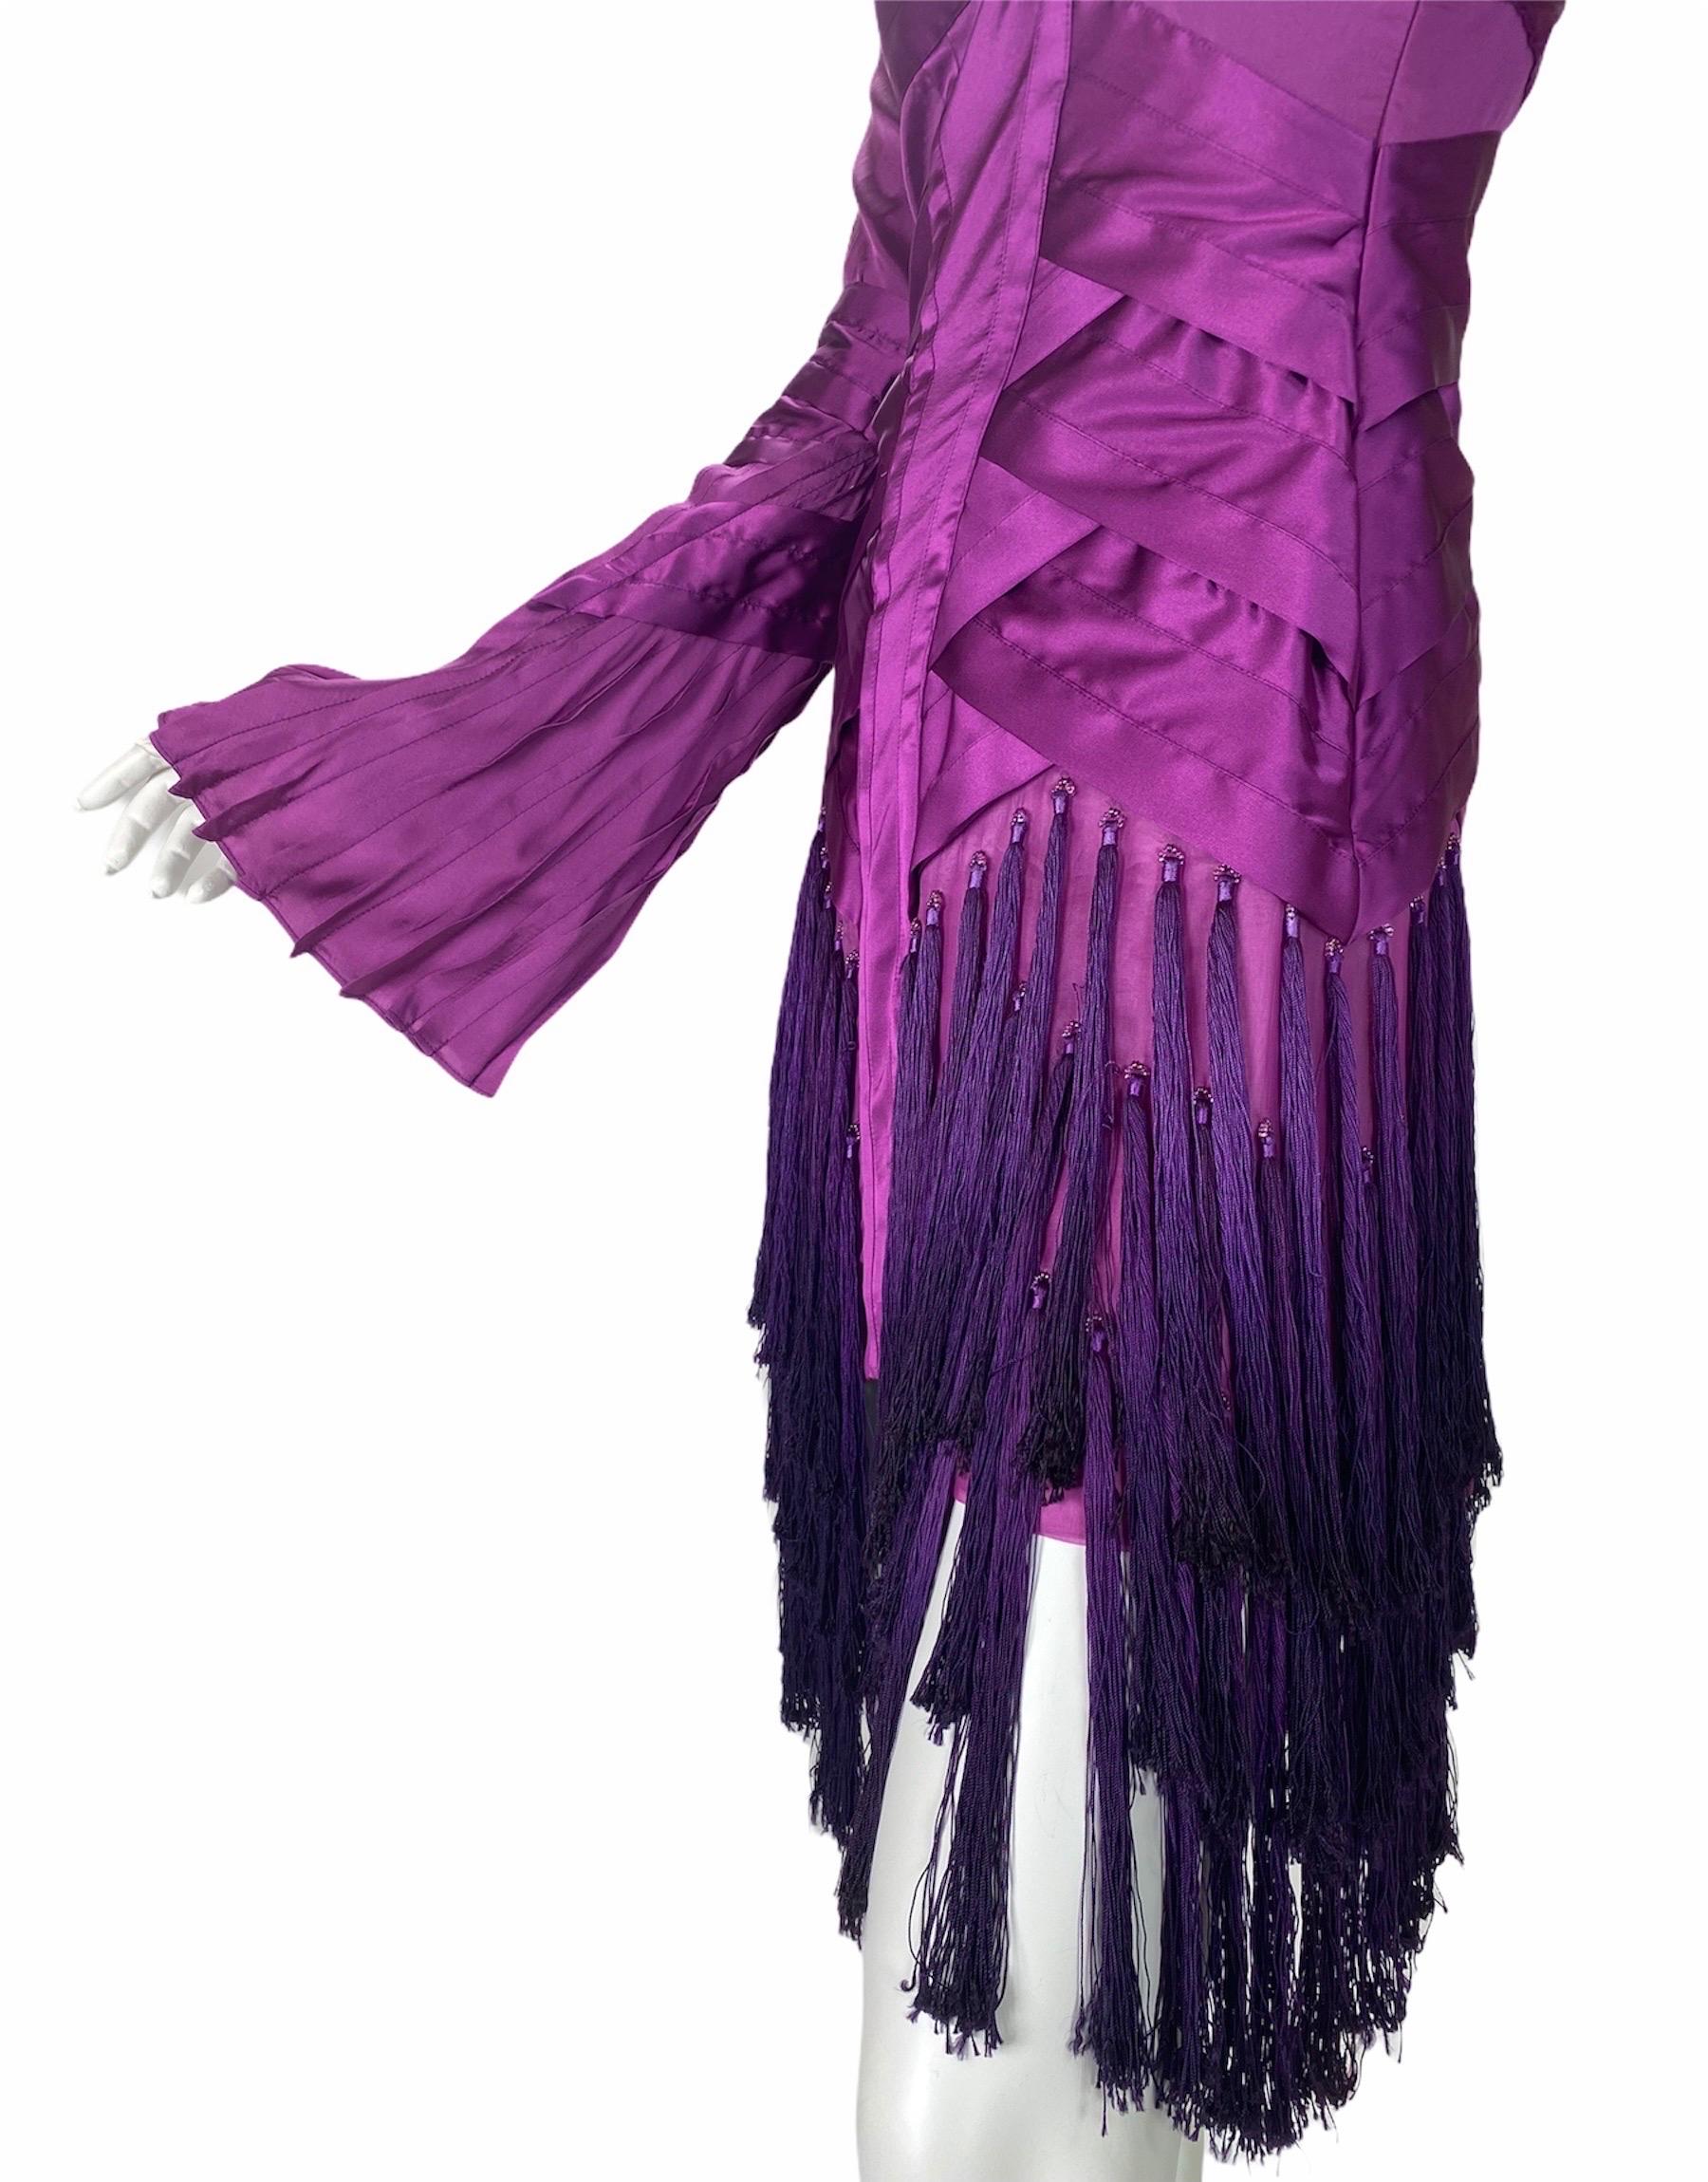 Tom Ford für Gucci Kleid mit Quasten
F/W 2004 Runway Collection'S
Das verführerischste und romantischste Kleid aller Zeiten!
Italienische Größe 38 - US 2
Bustier-Stil, Perlen-Detail an jeder Quaste,  Seitlicher Reißverschluss, plissierte Ärmel,